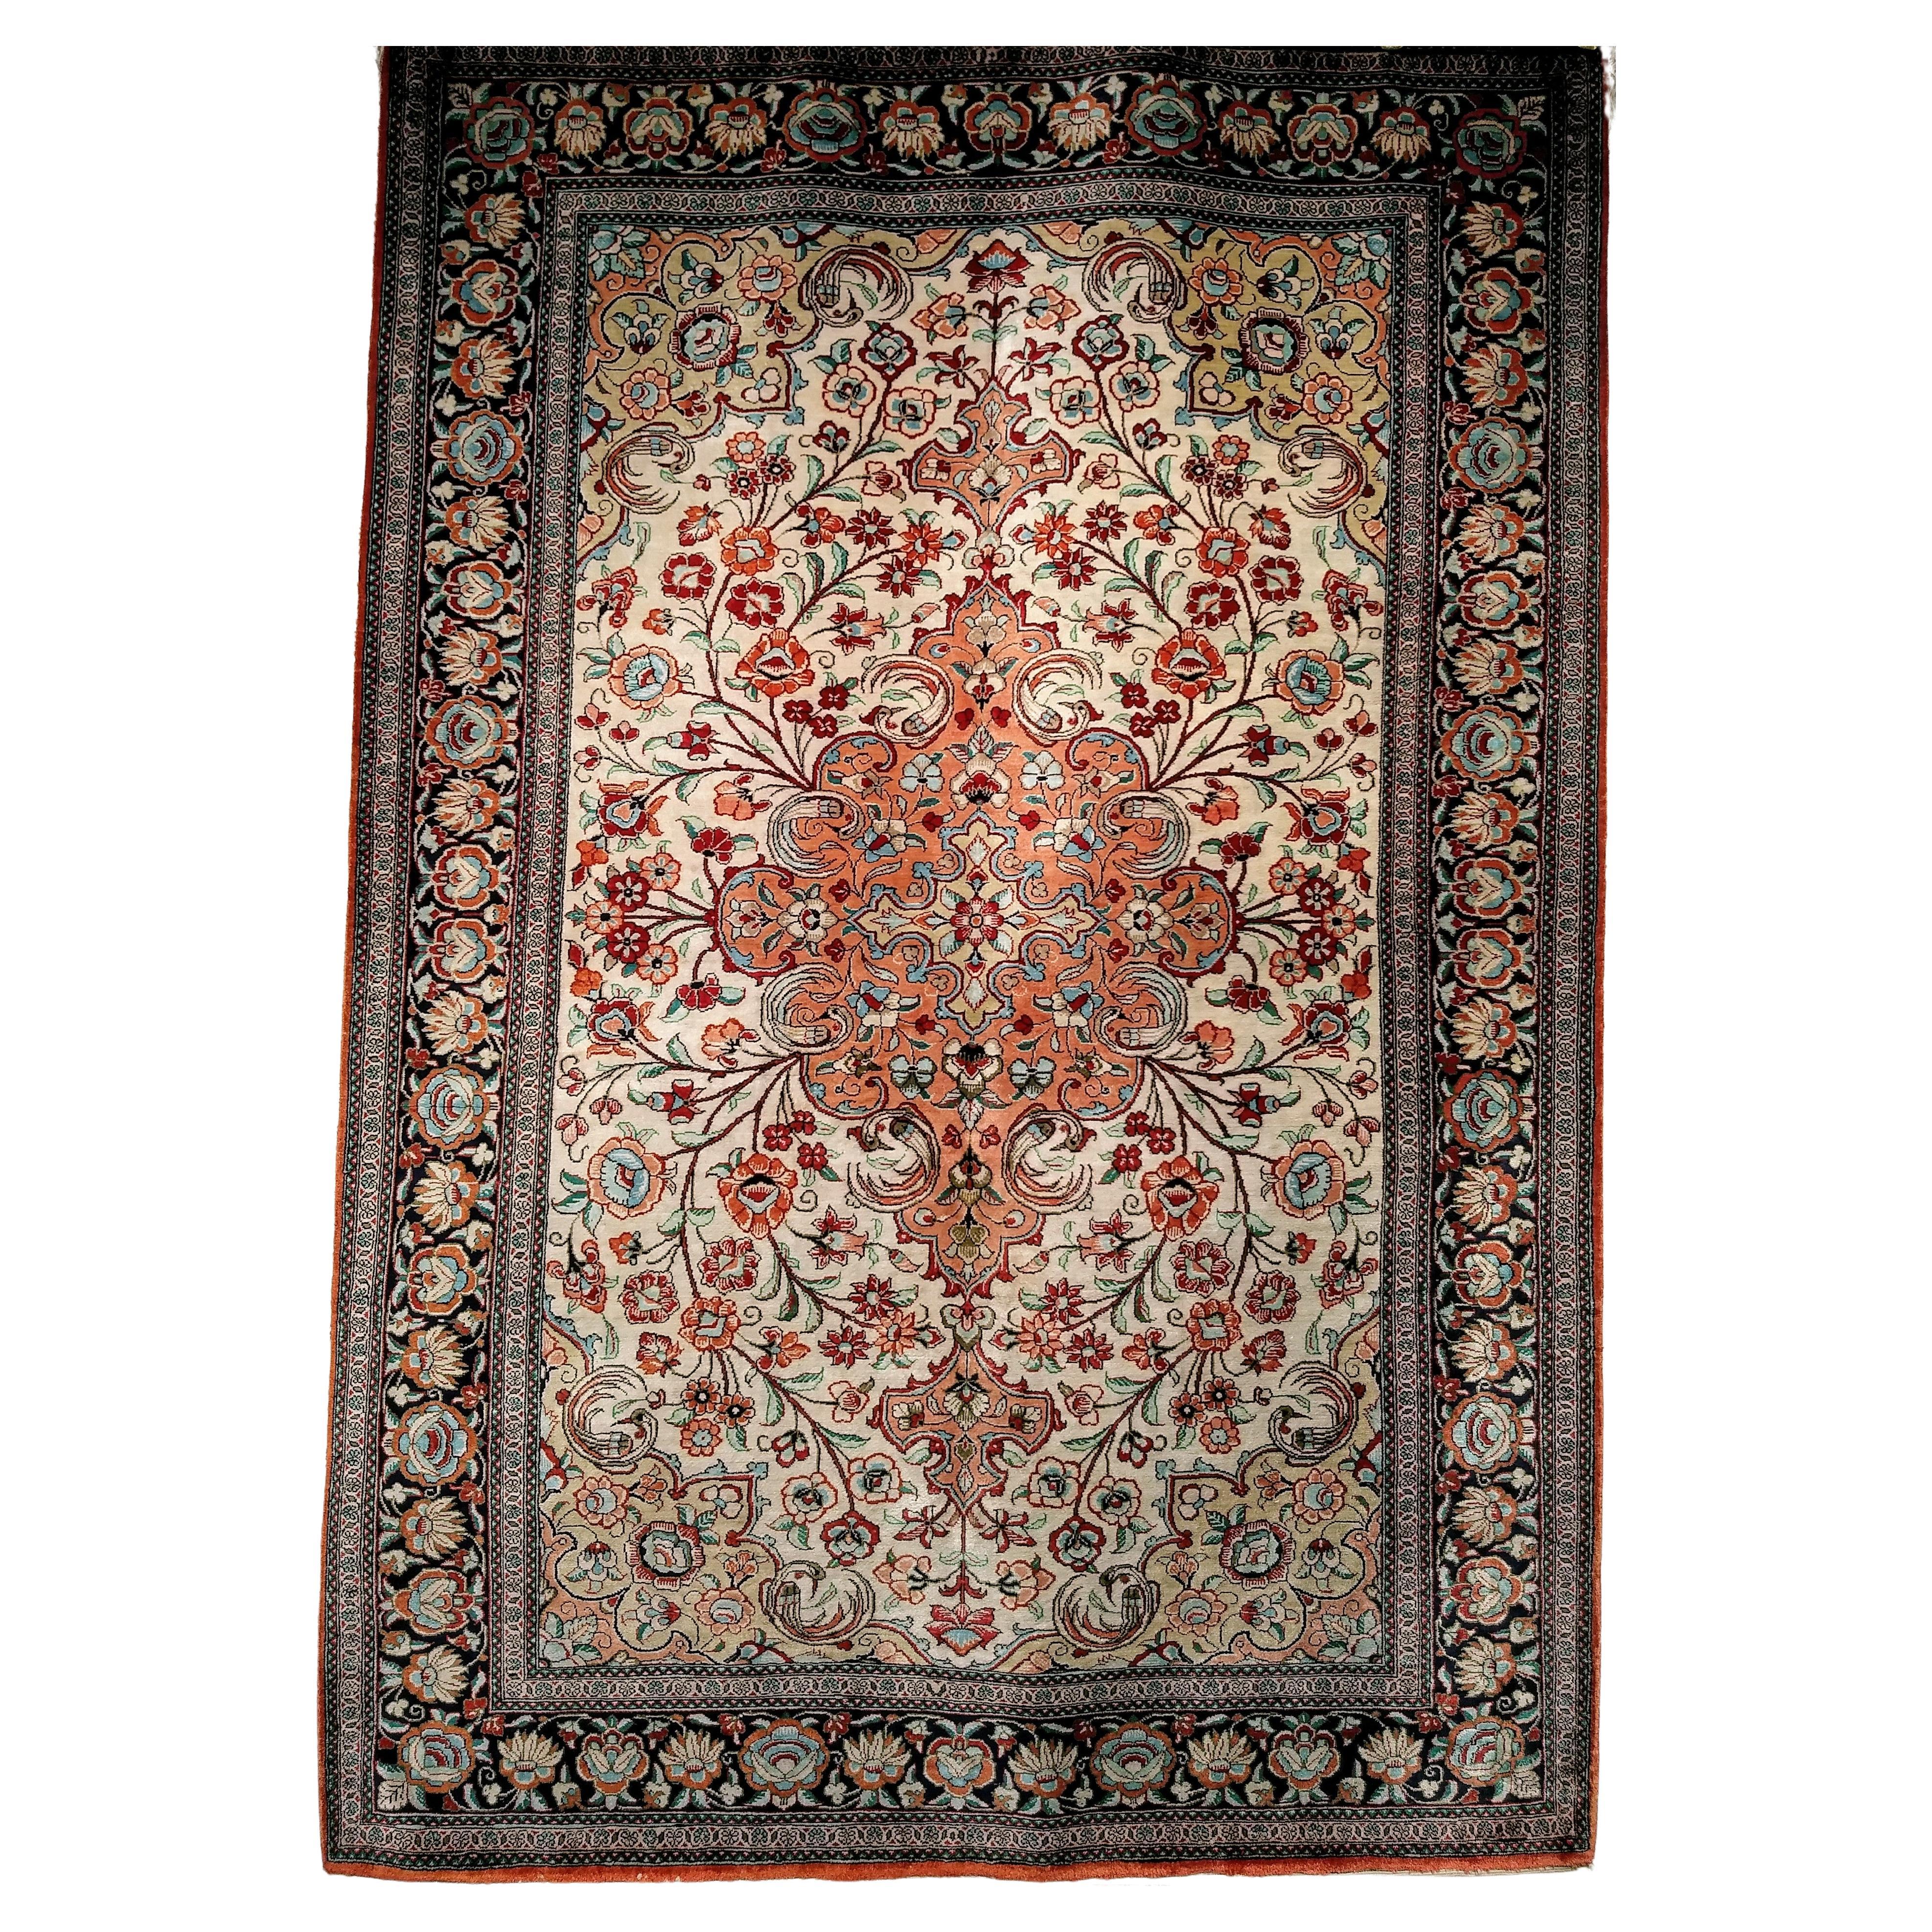 Persischer Qum-Teppich aus Seide mit Blumenmuster in Elfenbein, Rost, Kamel, Marineblau